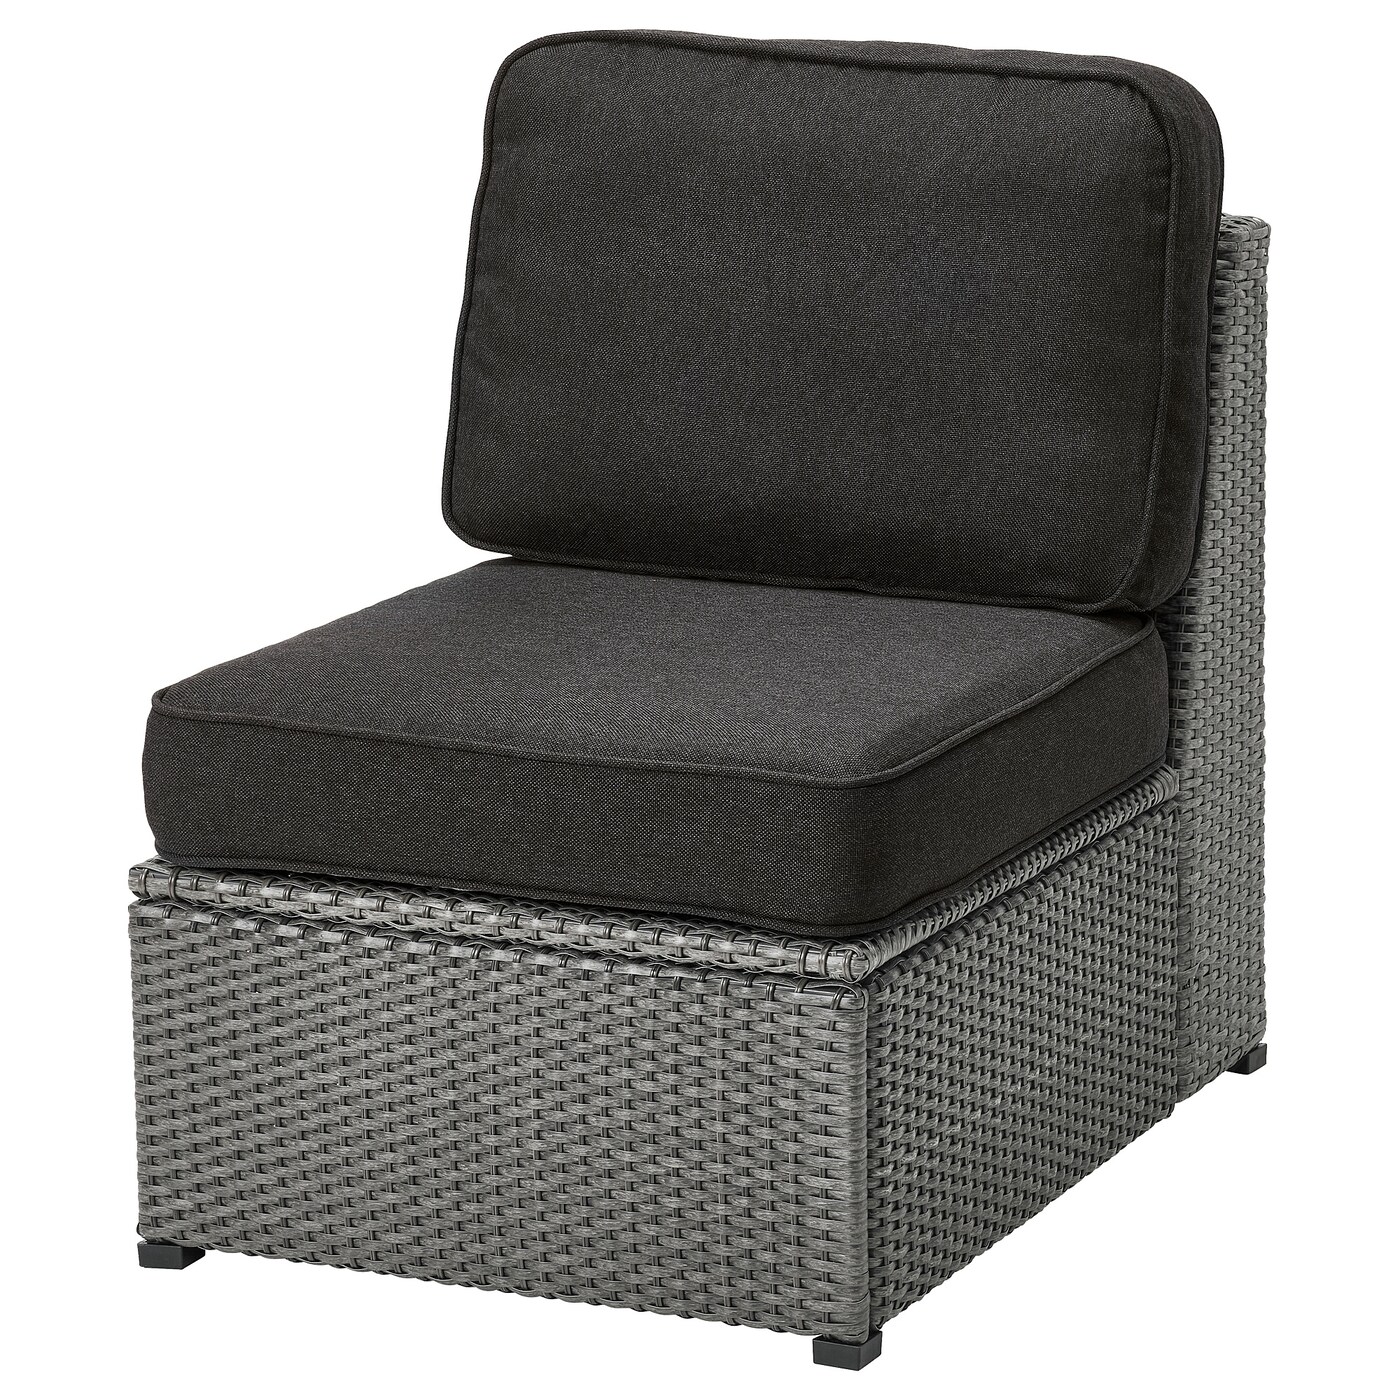 Секция сиденья для модульного дивана - IKEA SOLLERÖN/SOLLERON/СОЛЛЕРОН ИКЕА, 90х82х98 см, черный